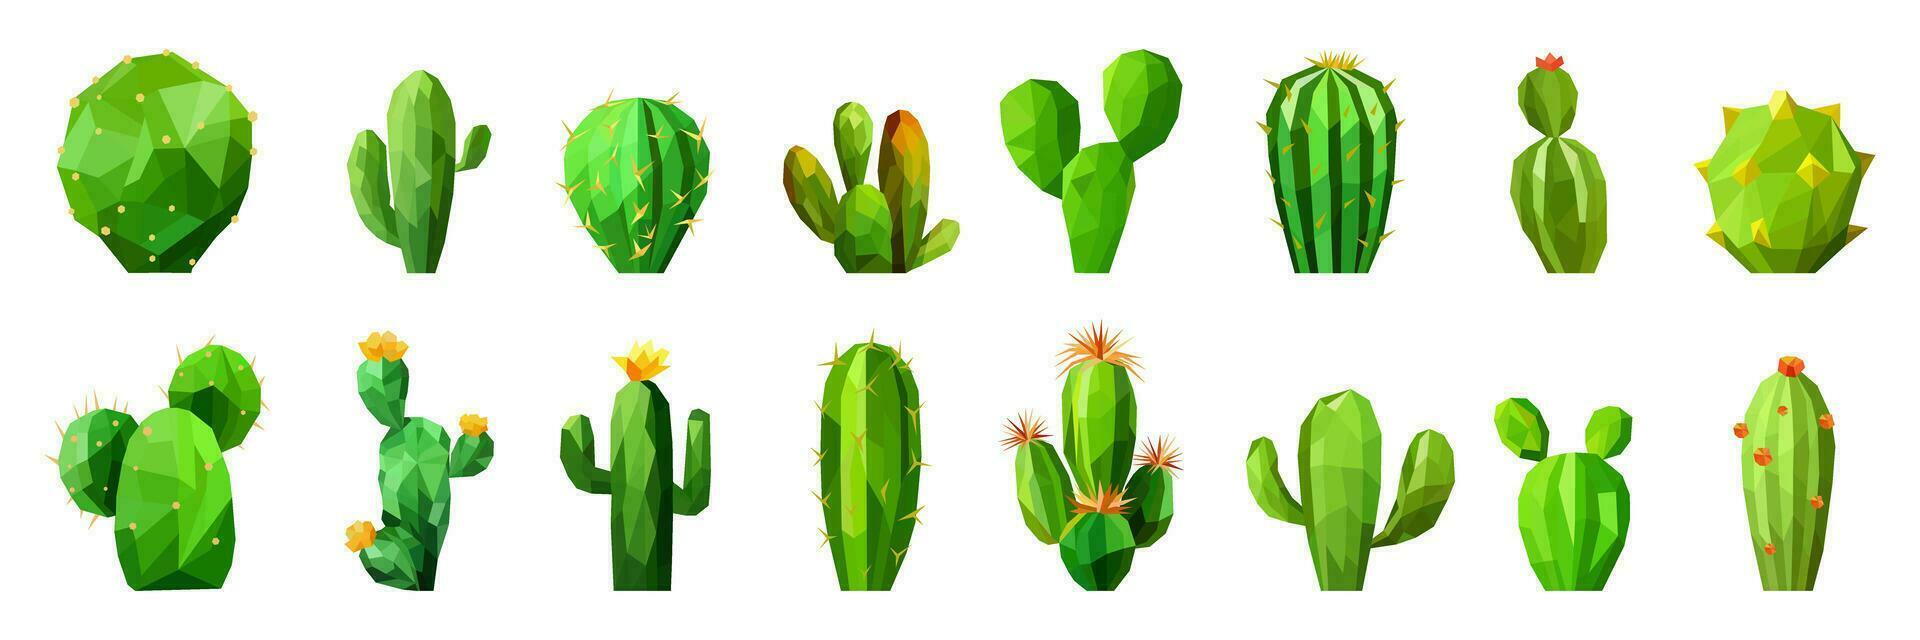 reeks van een veelhoekige groen cactus. minimalistische laag poly kunst stijl verzameling. vector